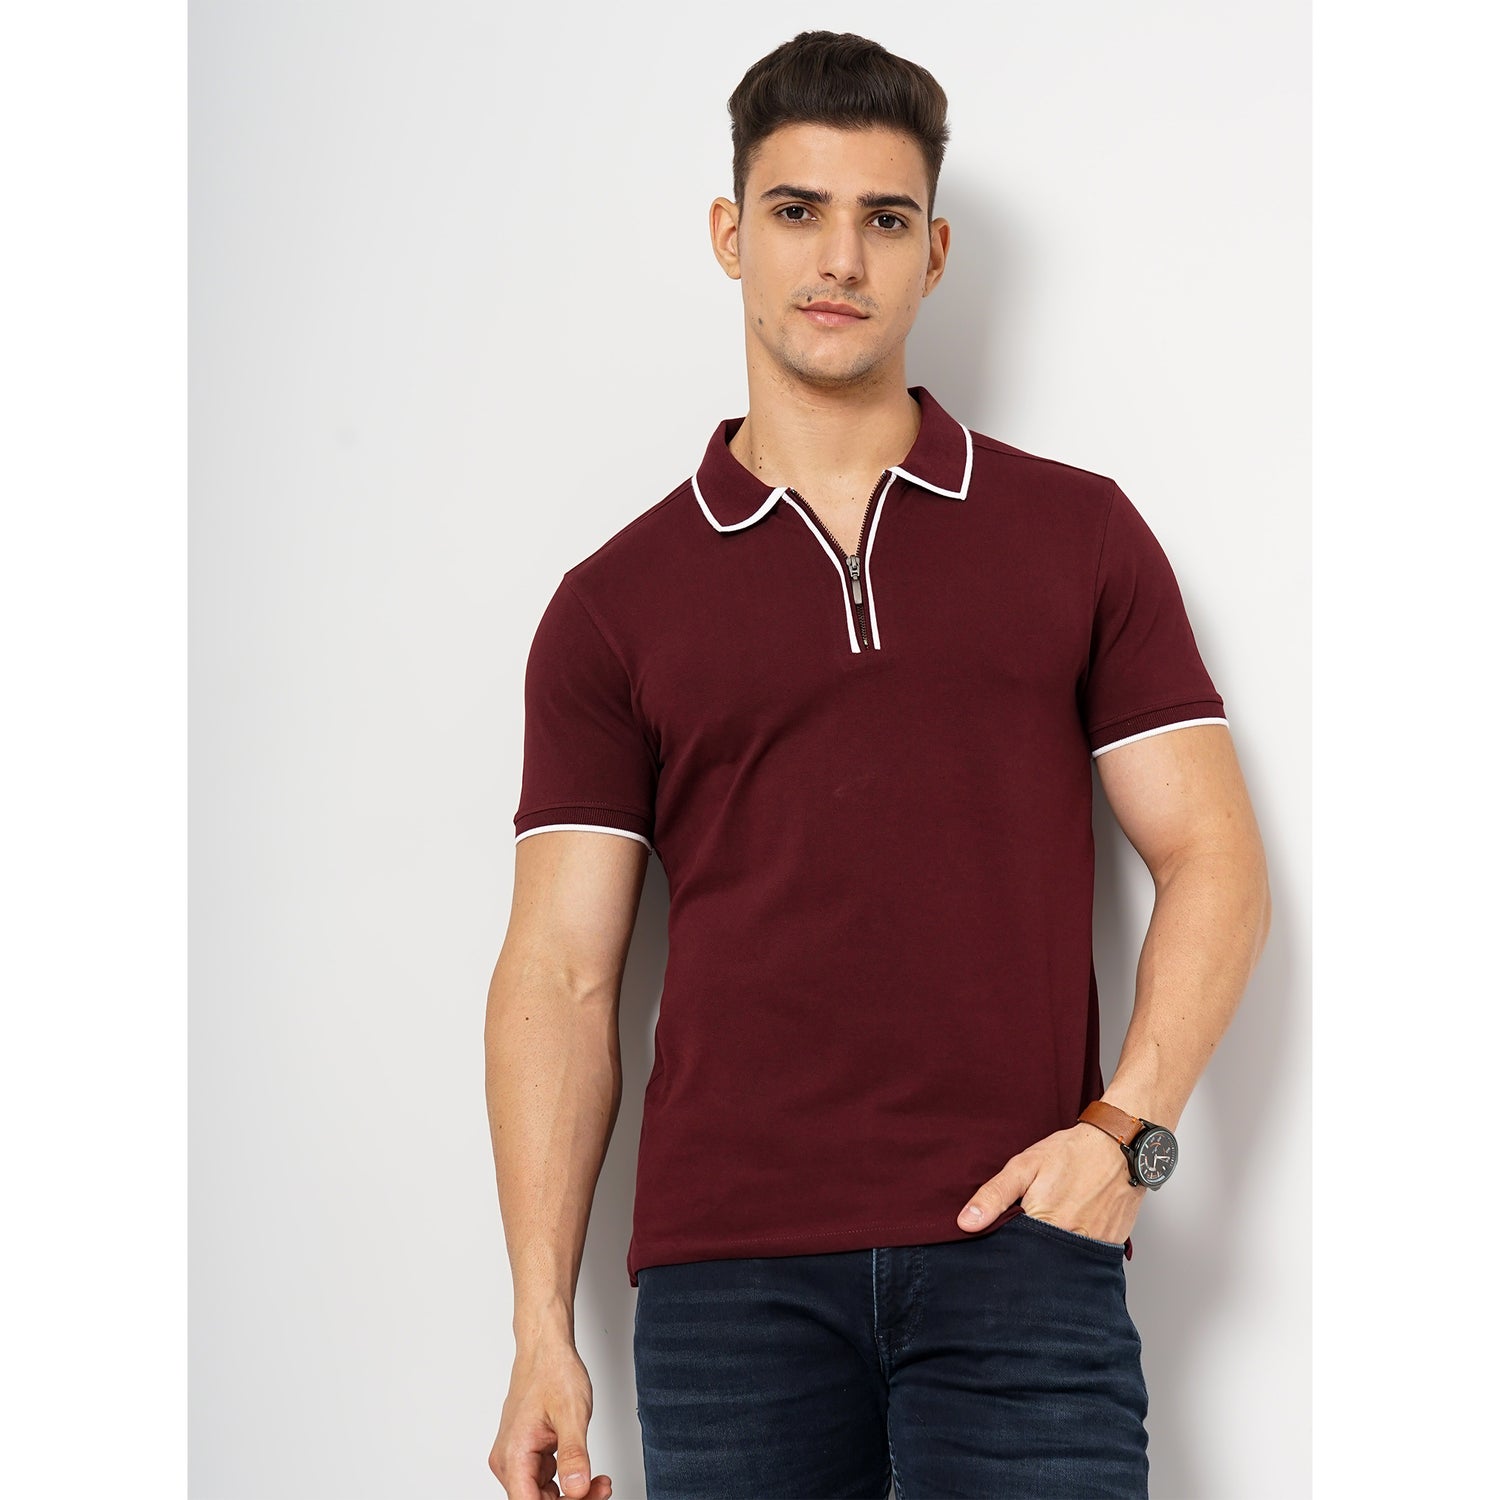 Burgundy Cotton Blend Fashion Polo Tshirt